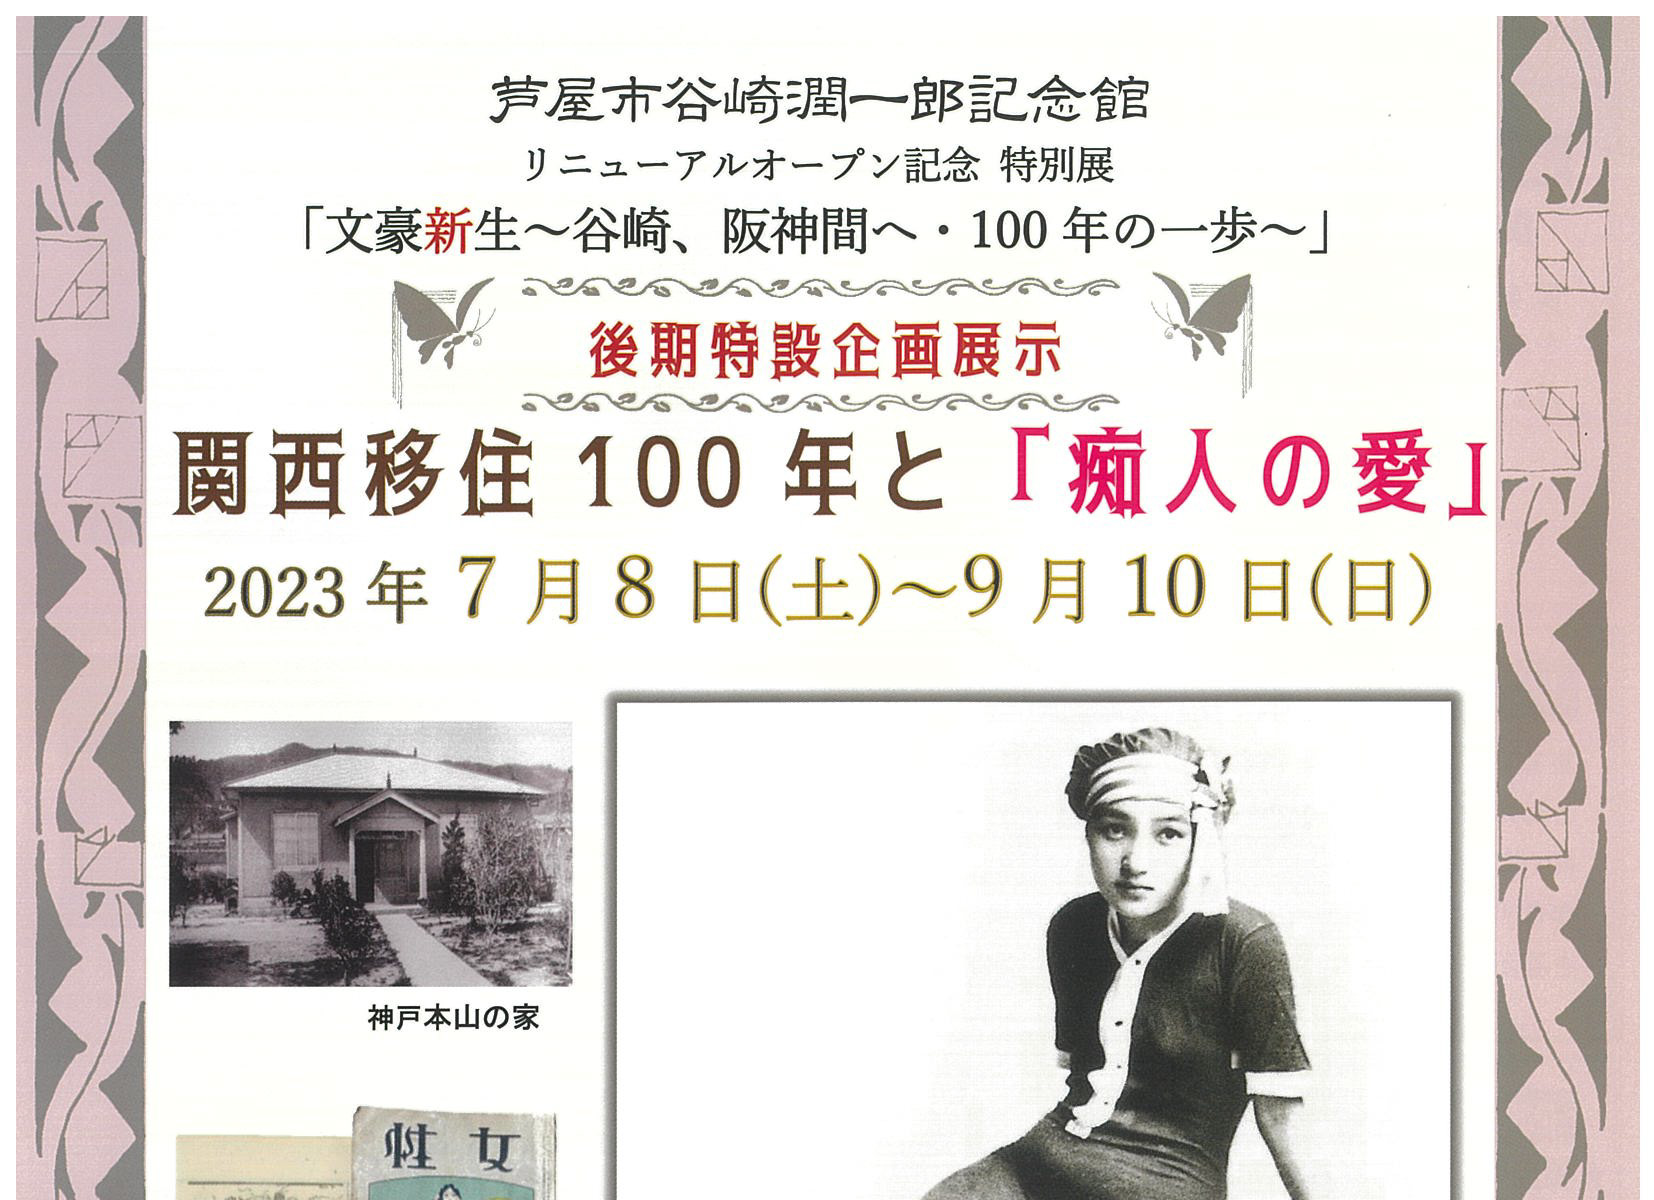 2023年7月8日～9月10日 谷崎潤一郎記念館 後期特設企画展示<br>文豪新生 関西移住100年と「痴人の愛」